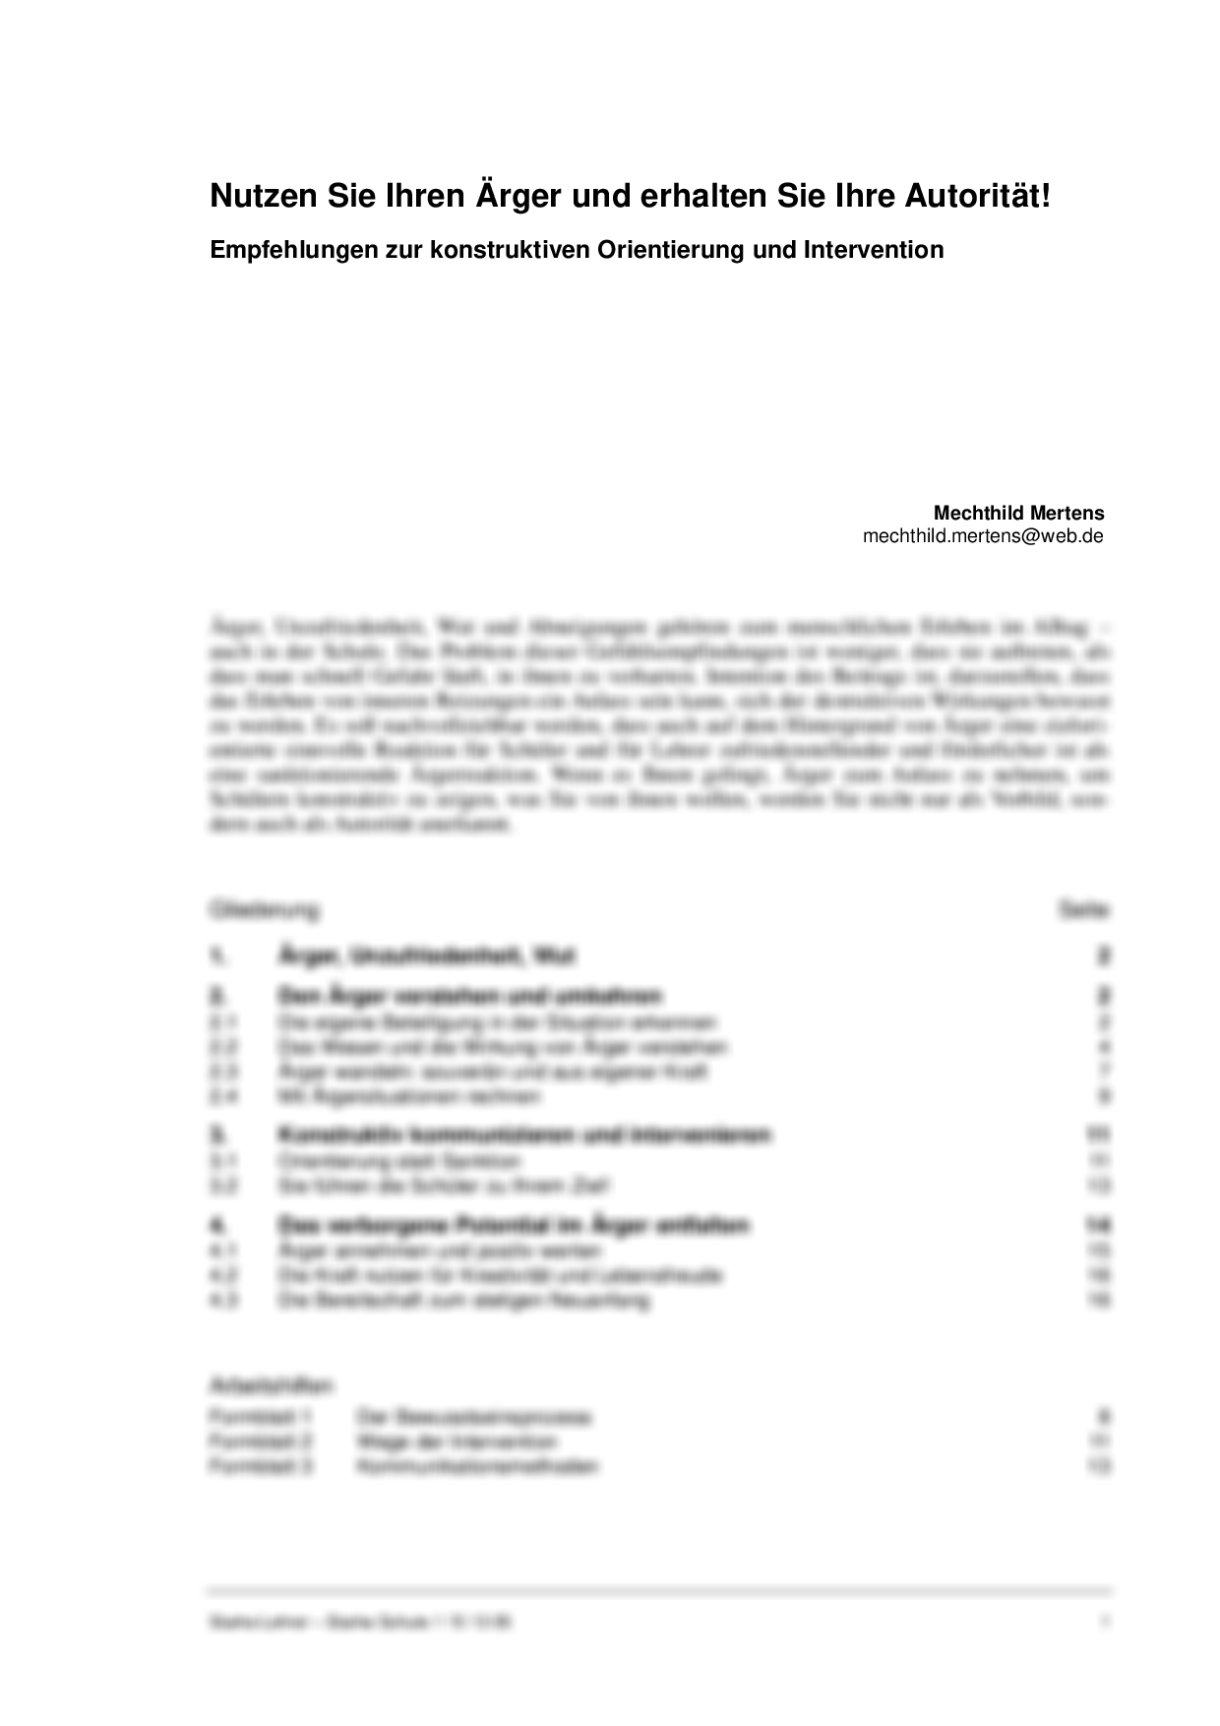 Empfehlungen zur konstruktiven Orientierung und Intervention in schwierigen Situationen - Seite 1